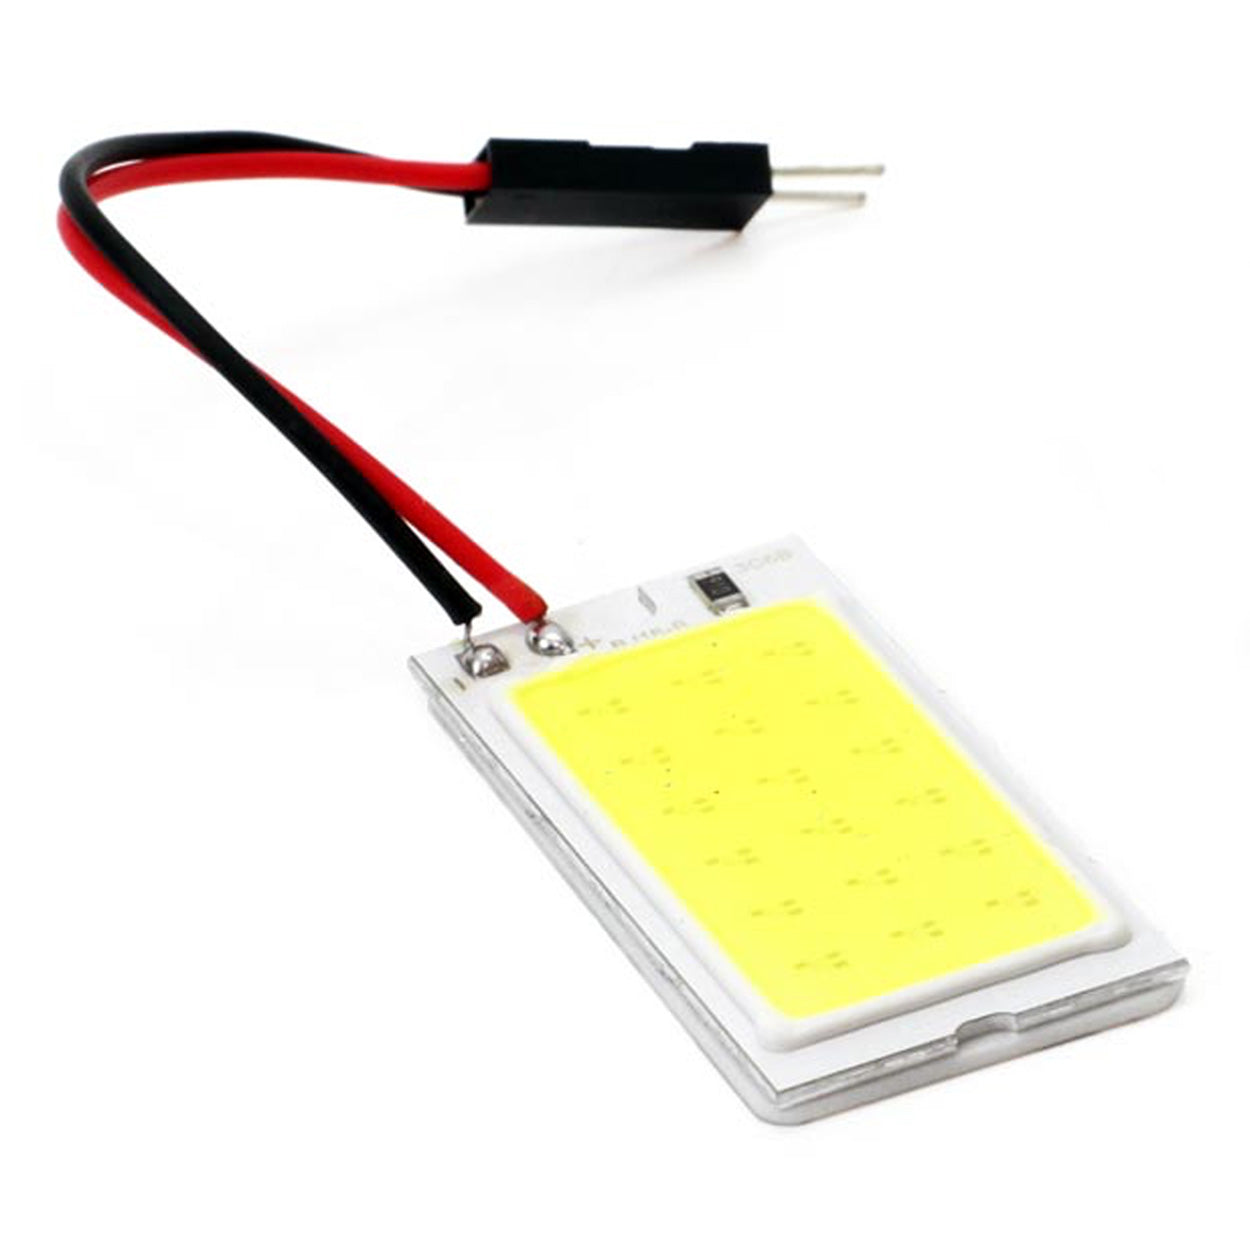 LED-lyspanel med T10 og Festoon-adaptere - spo-cs-deaktiveret - spo-default - spo-deaktiveret - spo-notify-me-deaktiveret